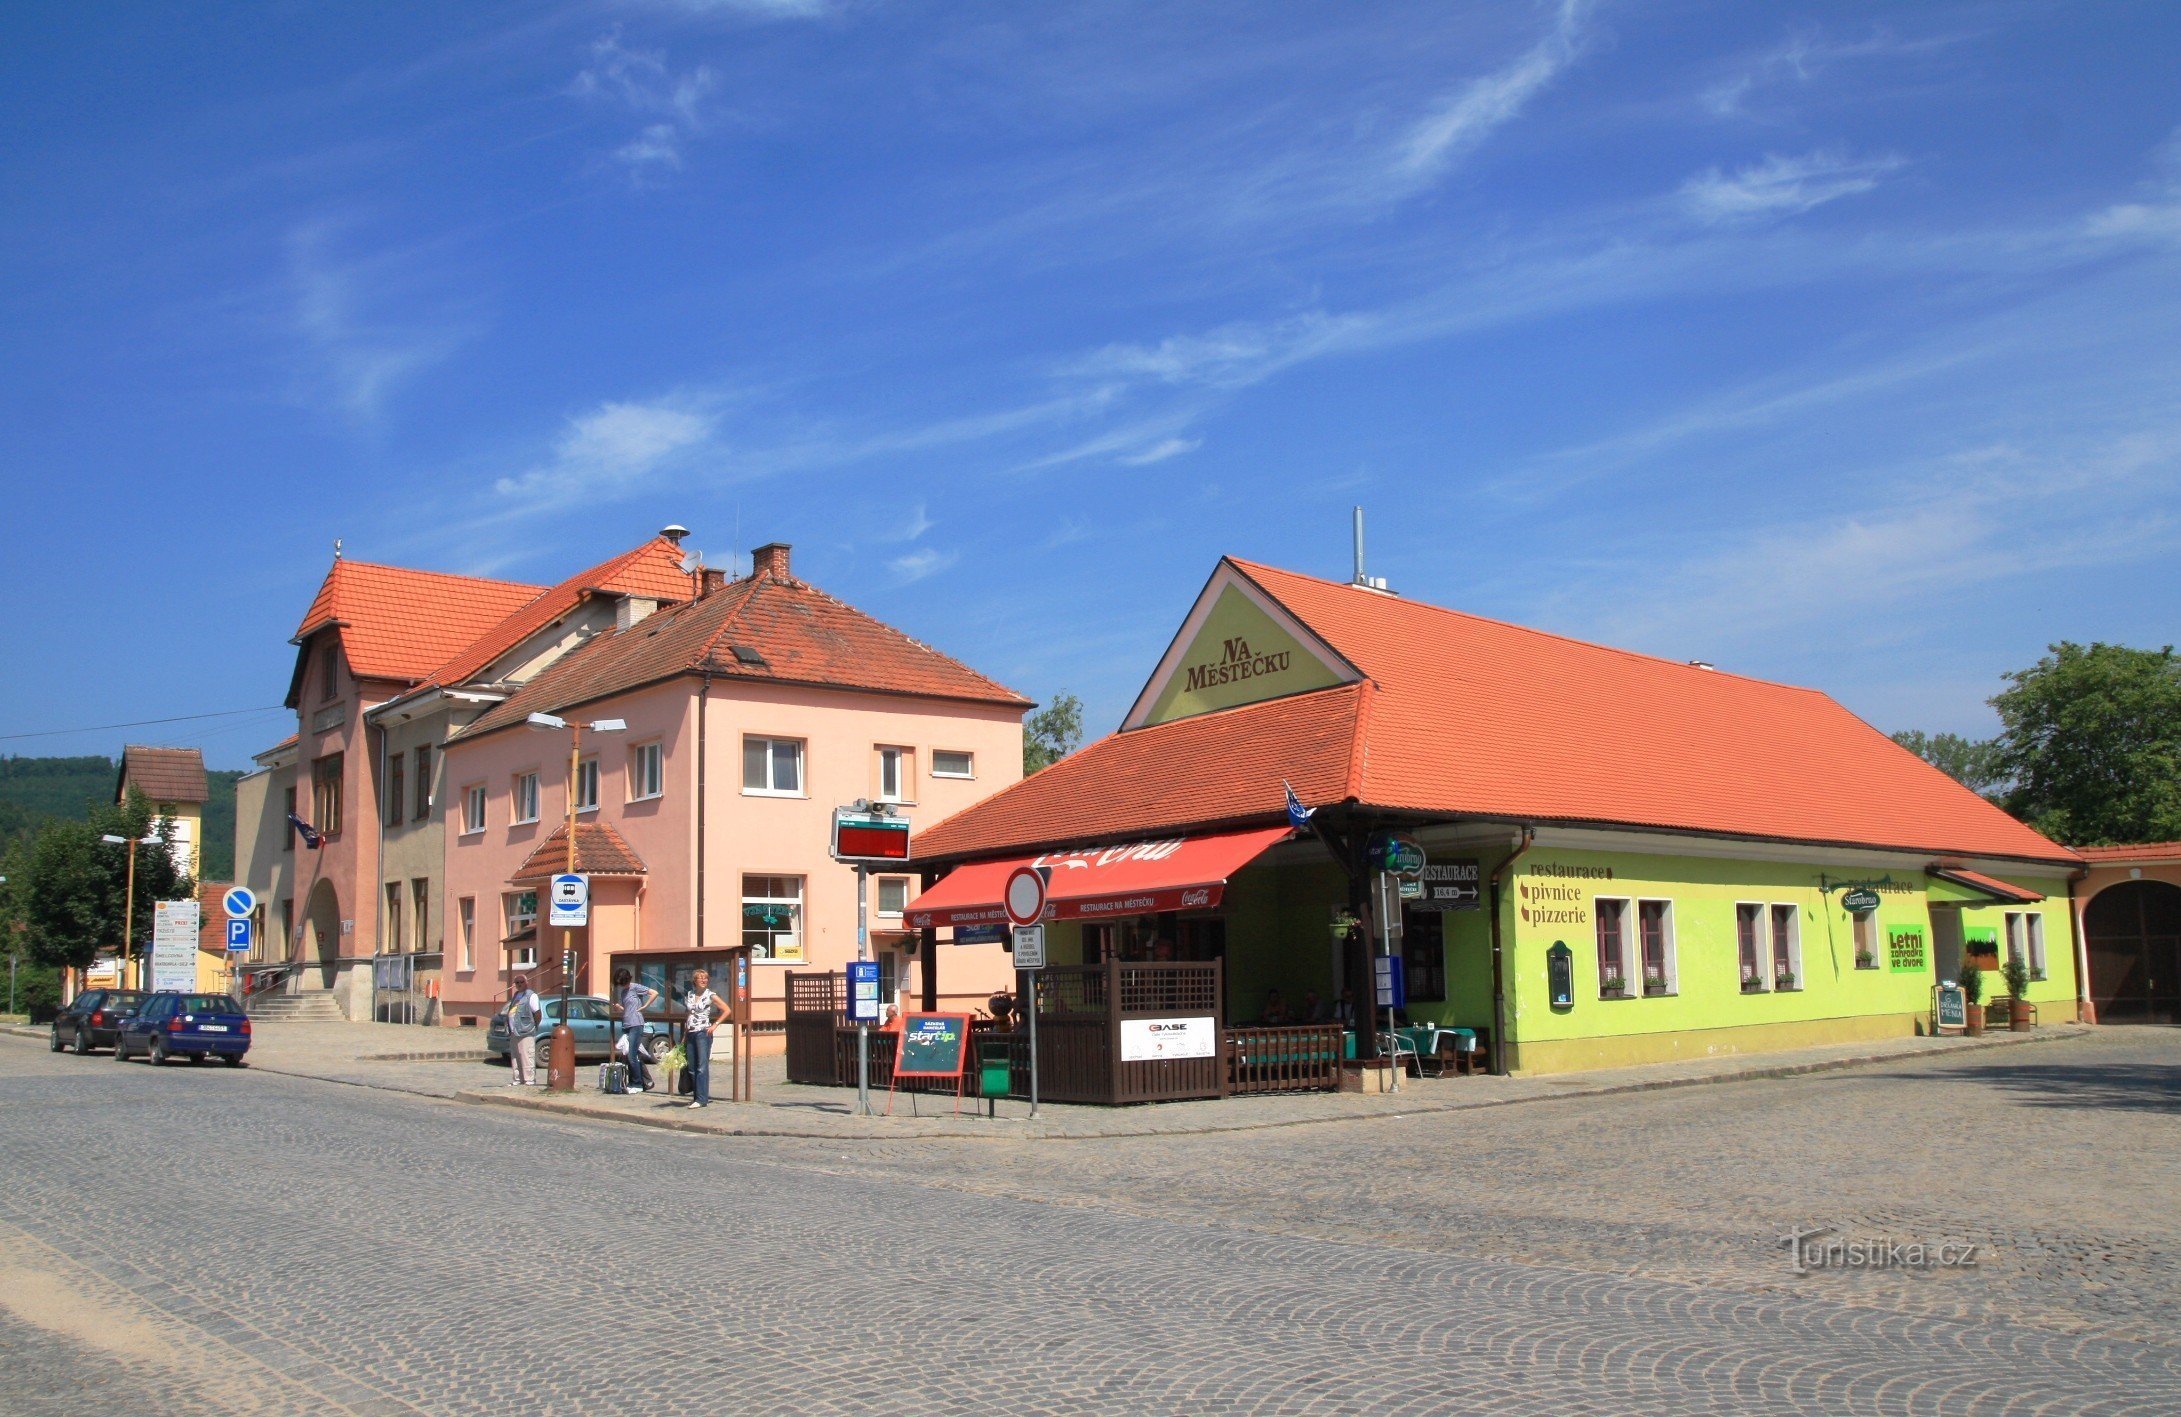 Piața din Veverská Bítýška